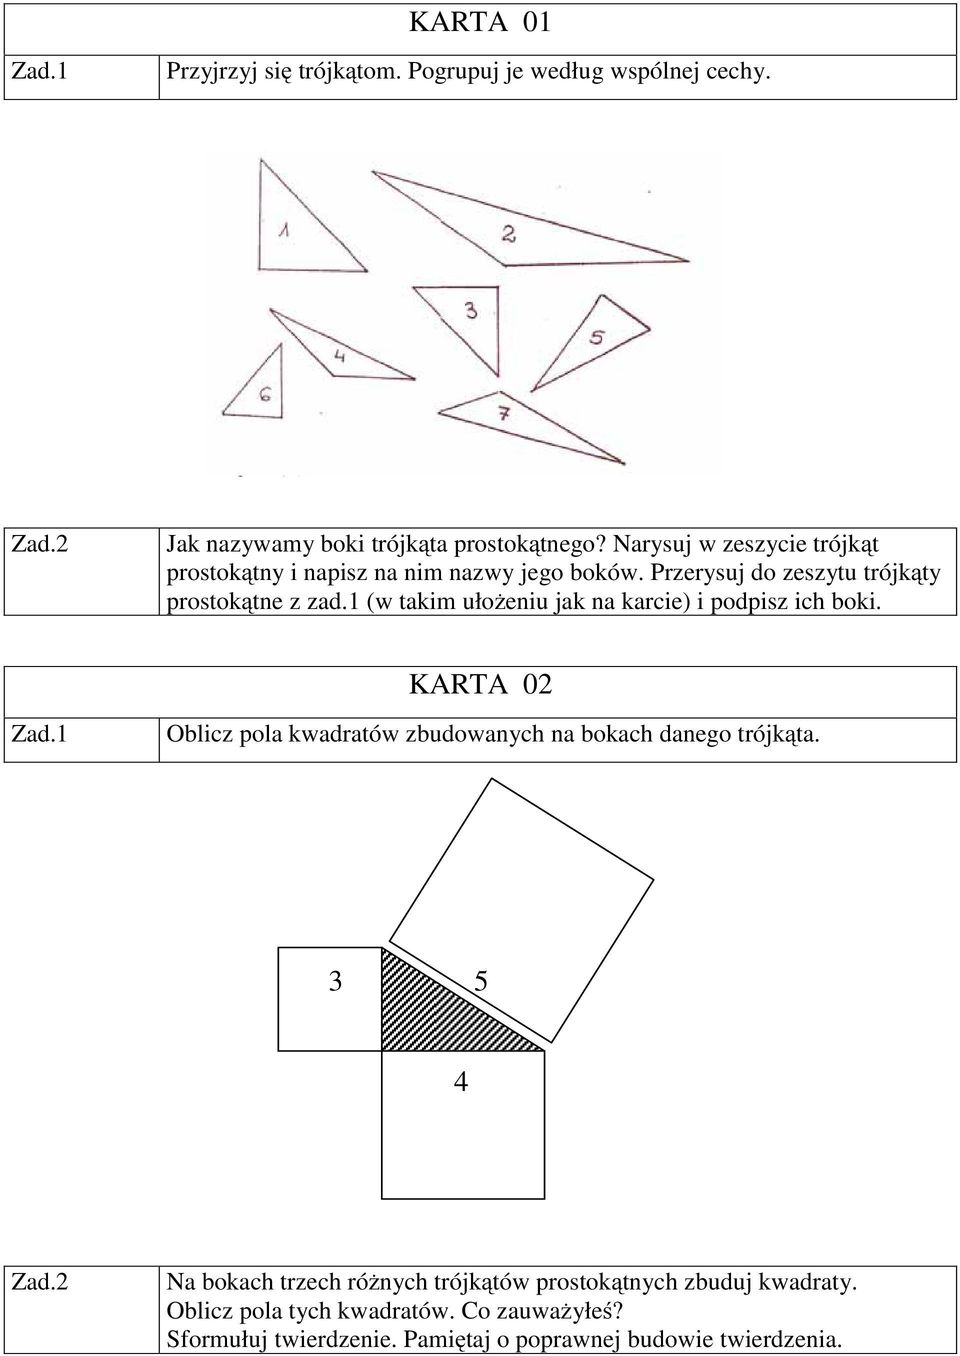 1 (w takim ułożeniu jak na karcie) i podpisz ich boki. KARTA 02 Oblicz pola kwadratów zbudowanych na bokach danego trójkąta.